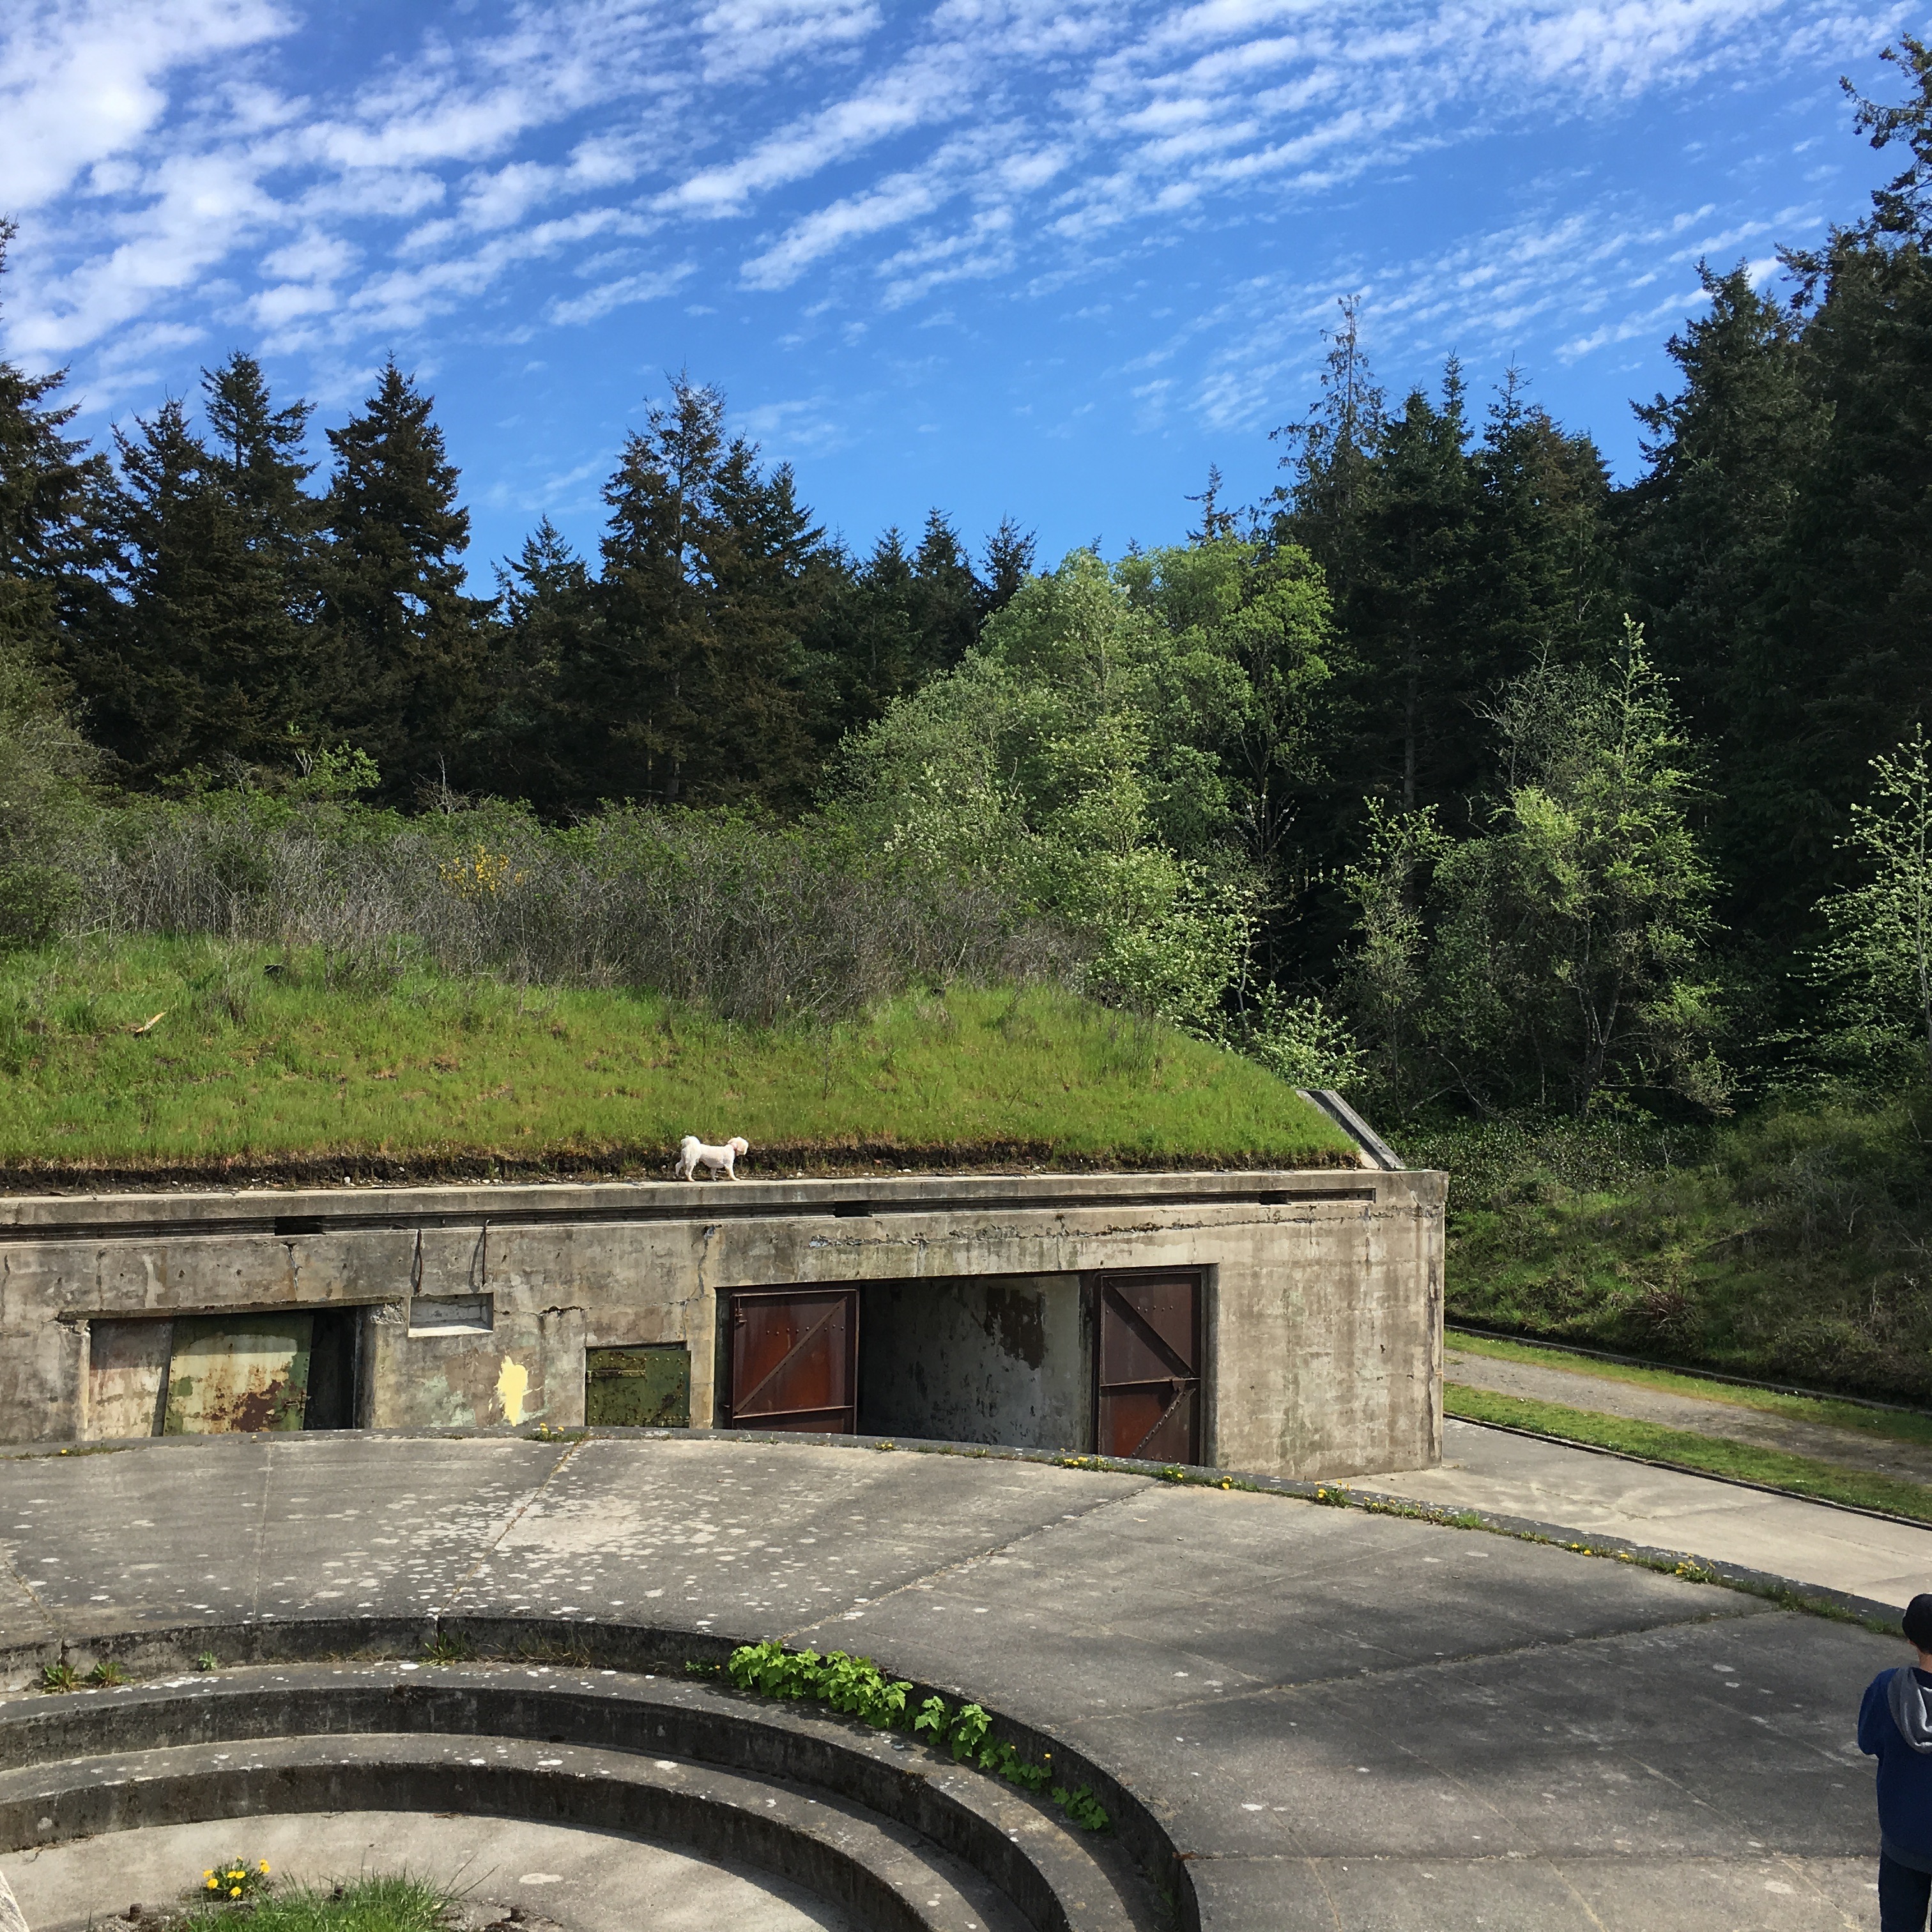 Bunkers at Fort Worden